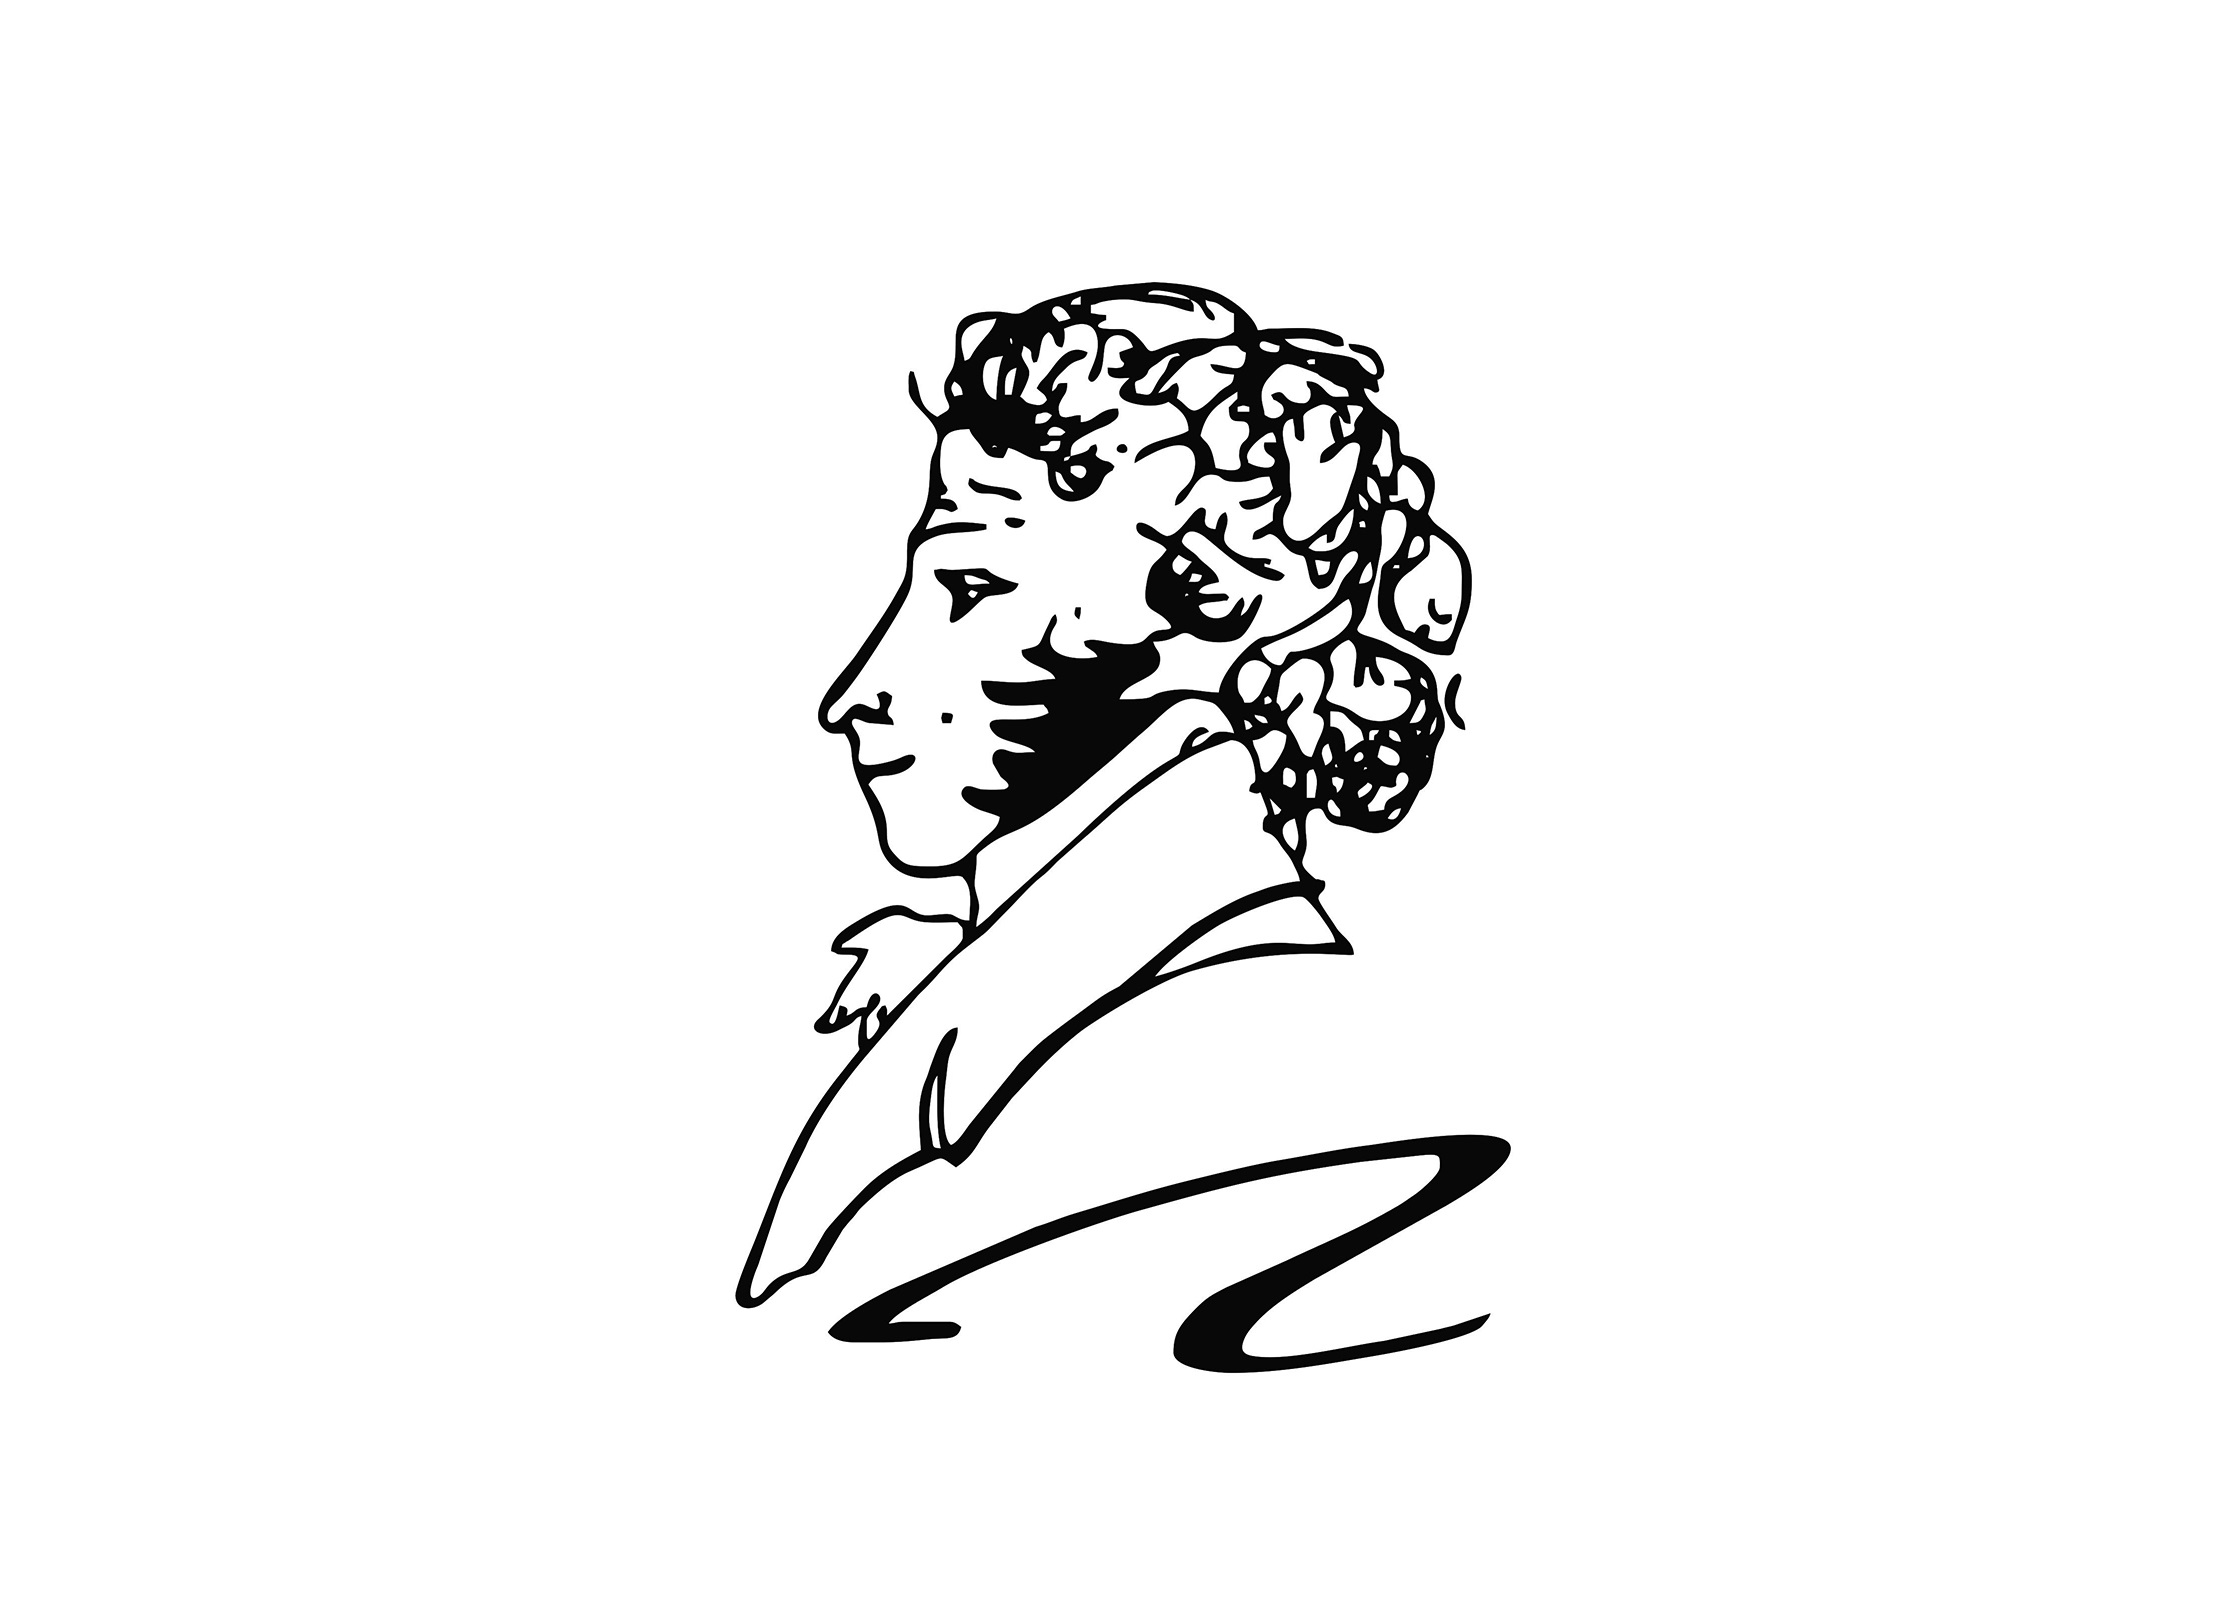 Пушкин диджитал: кто и почему делает поэта героем фантастических сюжетов